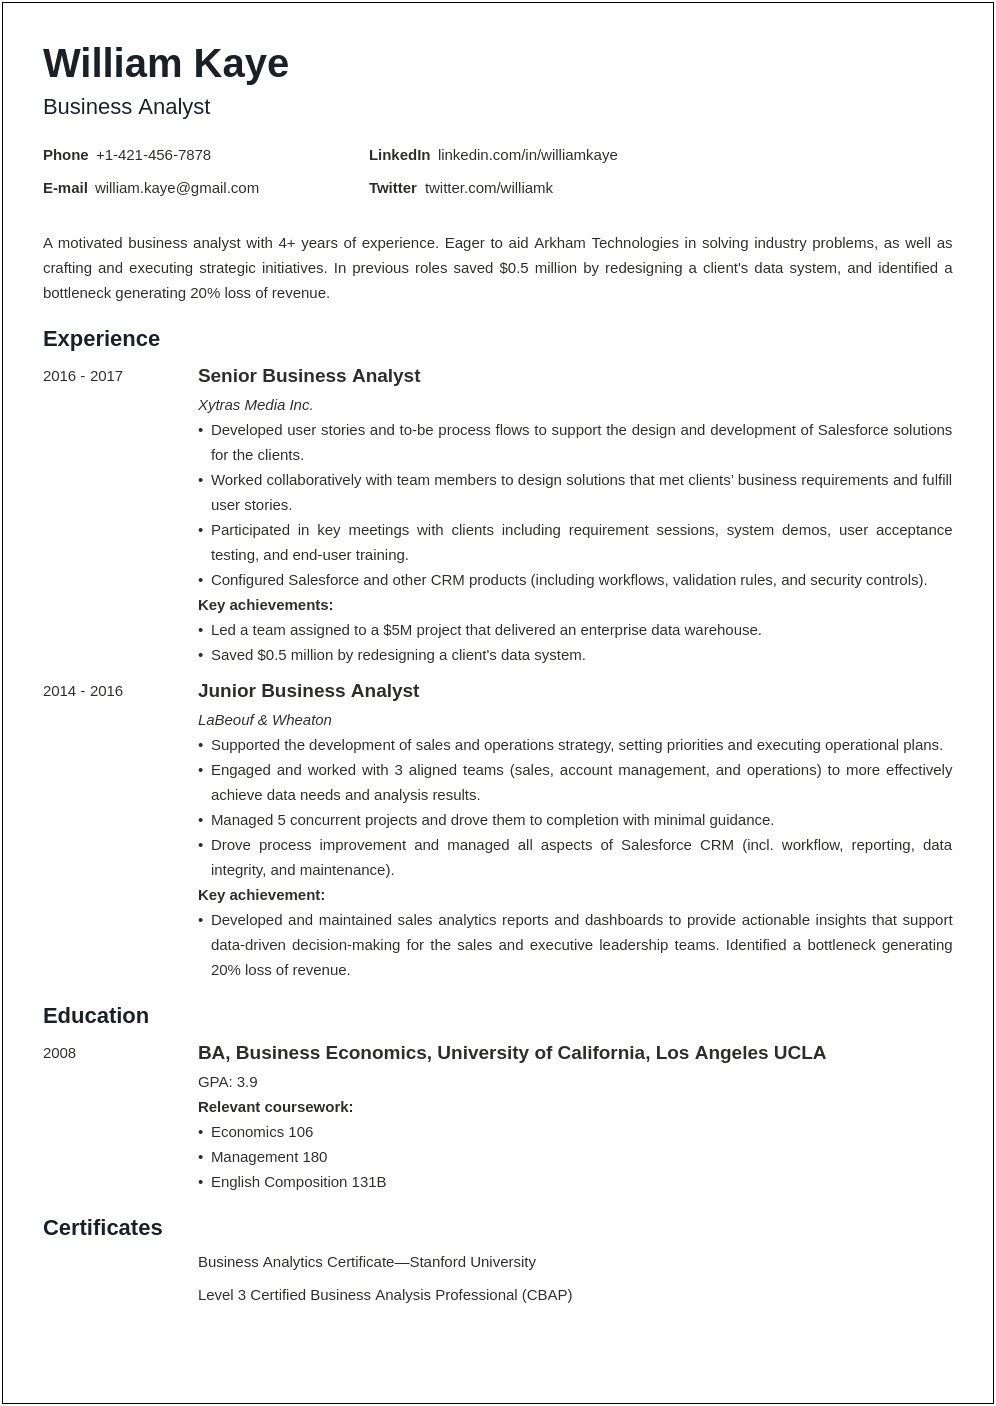 Resume Format For Finance Job For Freshers